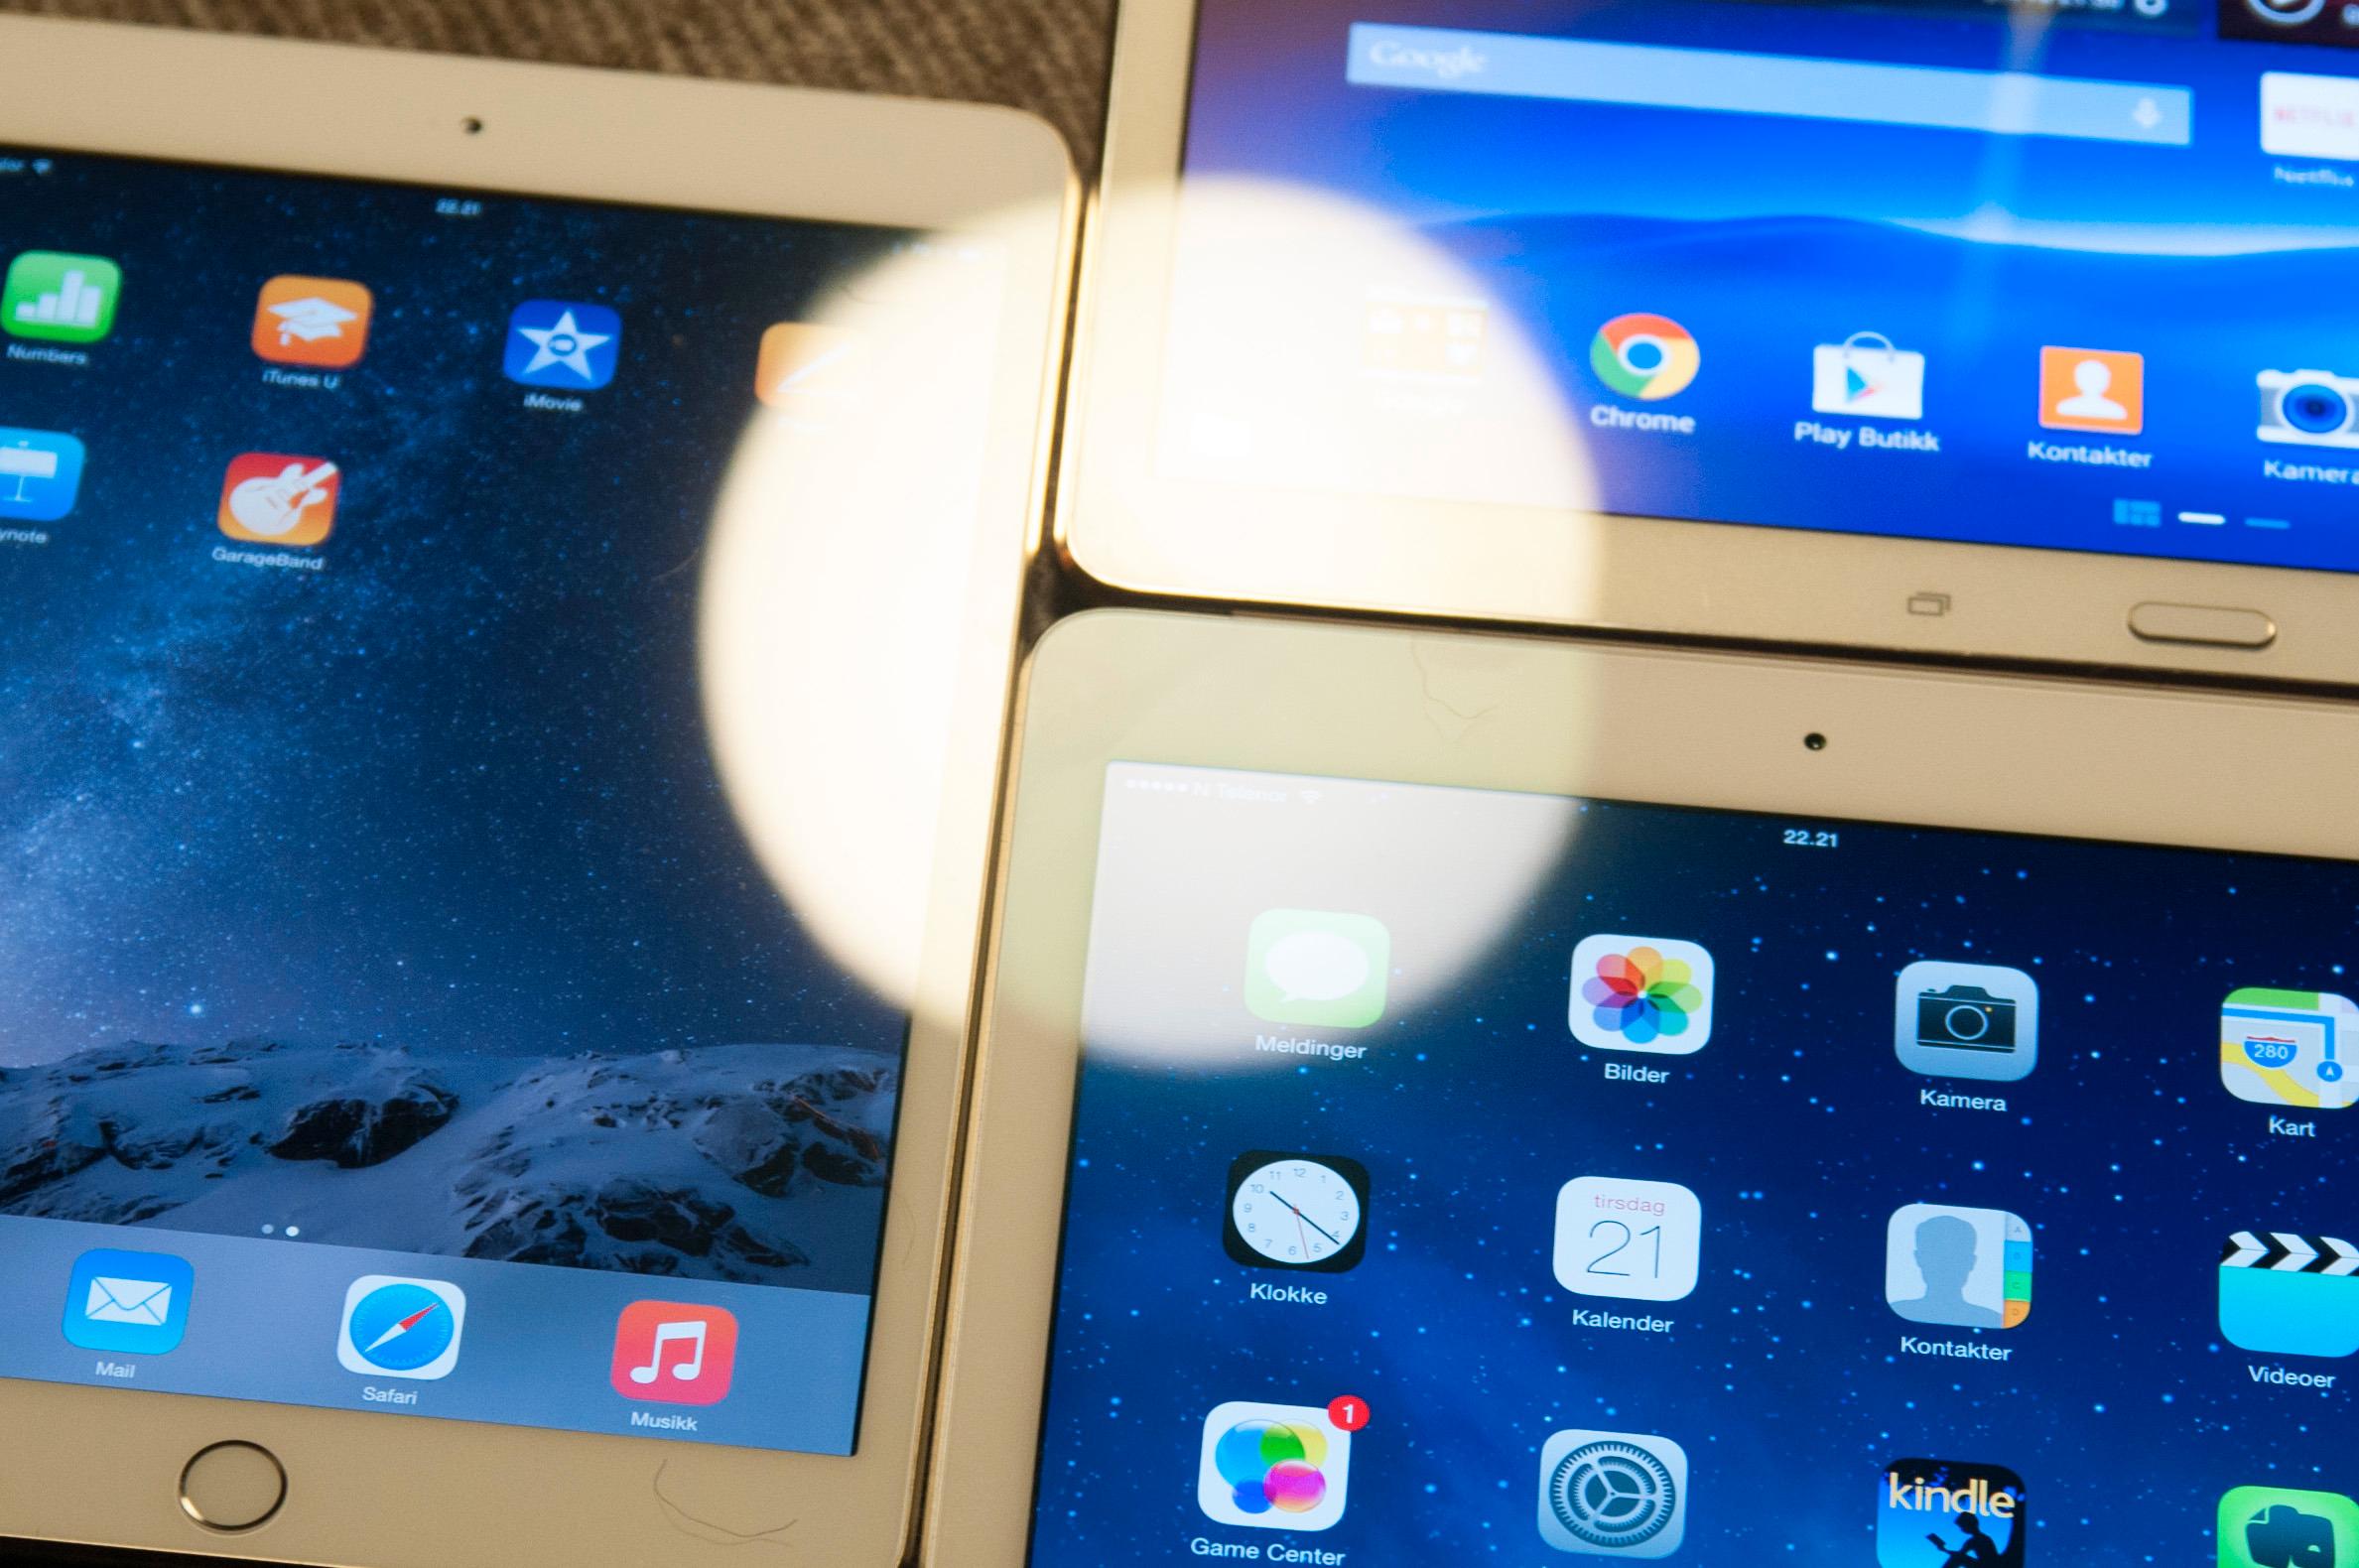 Det er betydelig mindre refleks i iPad Air 2-skjermen enn i andre nettbrett. Til venstre ser du iPad Mini 3, øverst til høyre er Samsung Galaxy Tab S, og nede til høyre er iPad Air 2.Foto: Finn Jarle Kvalheim, Tek.no